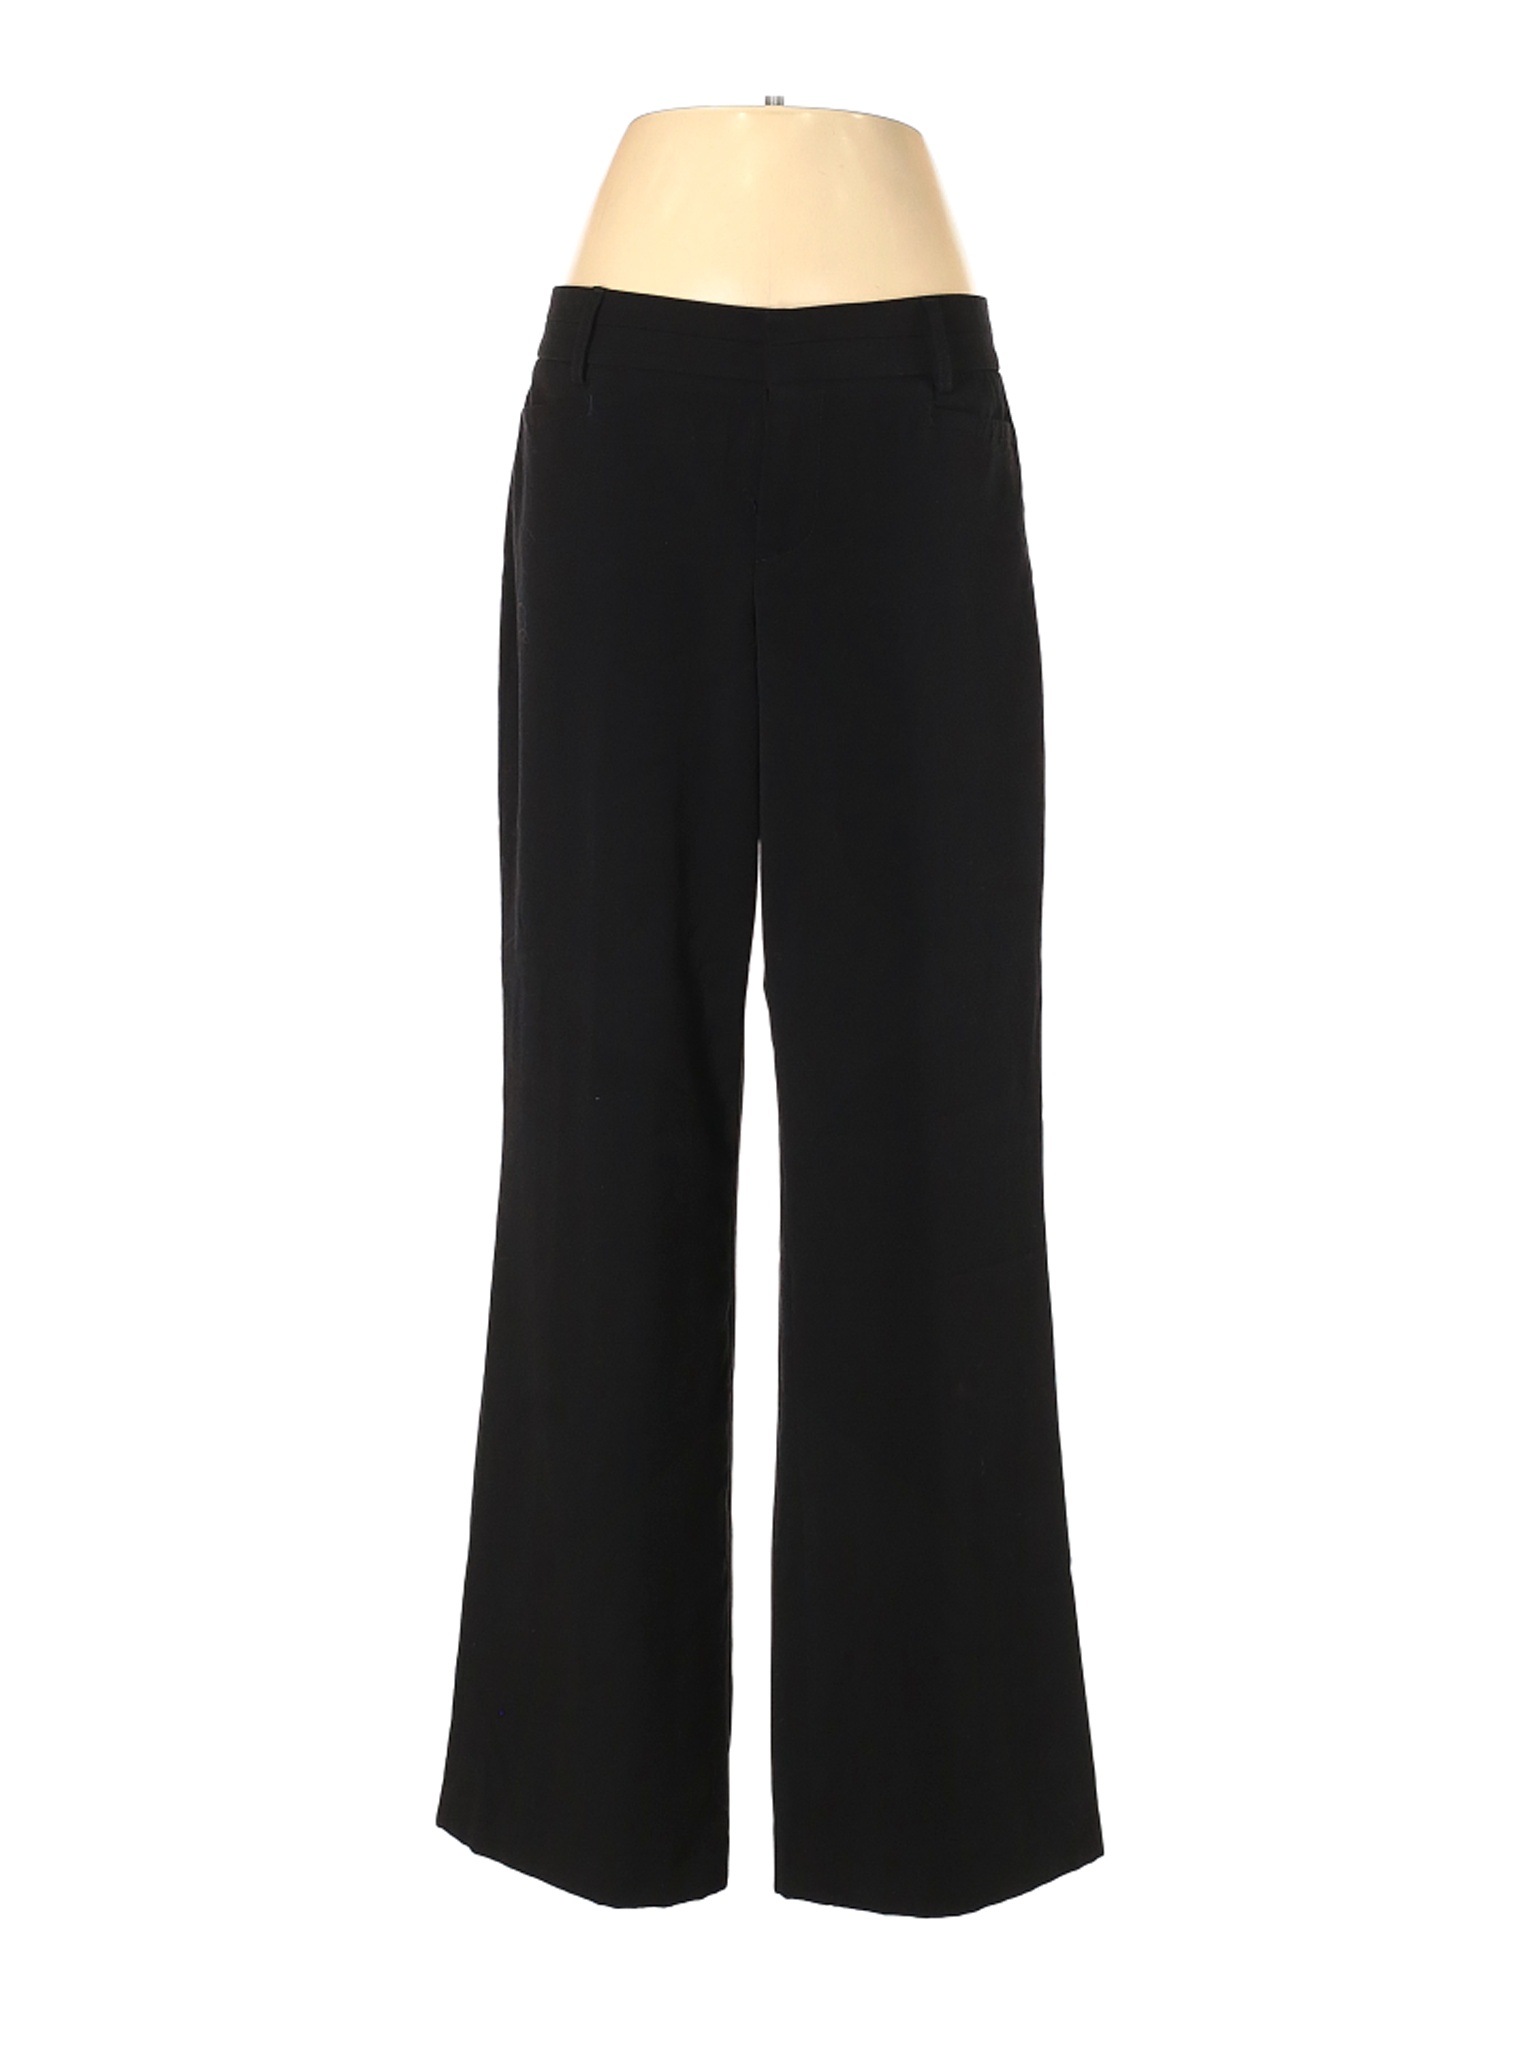 Nine West Women Black Dress Pants 8 | eBay